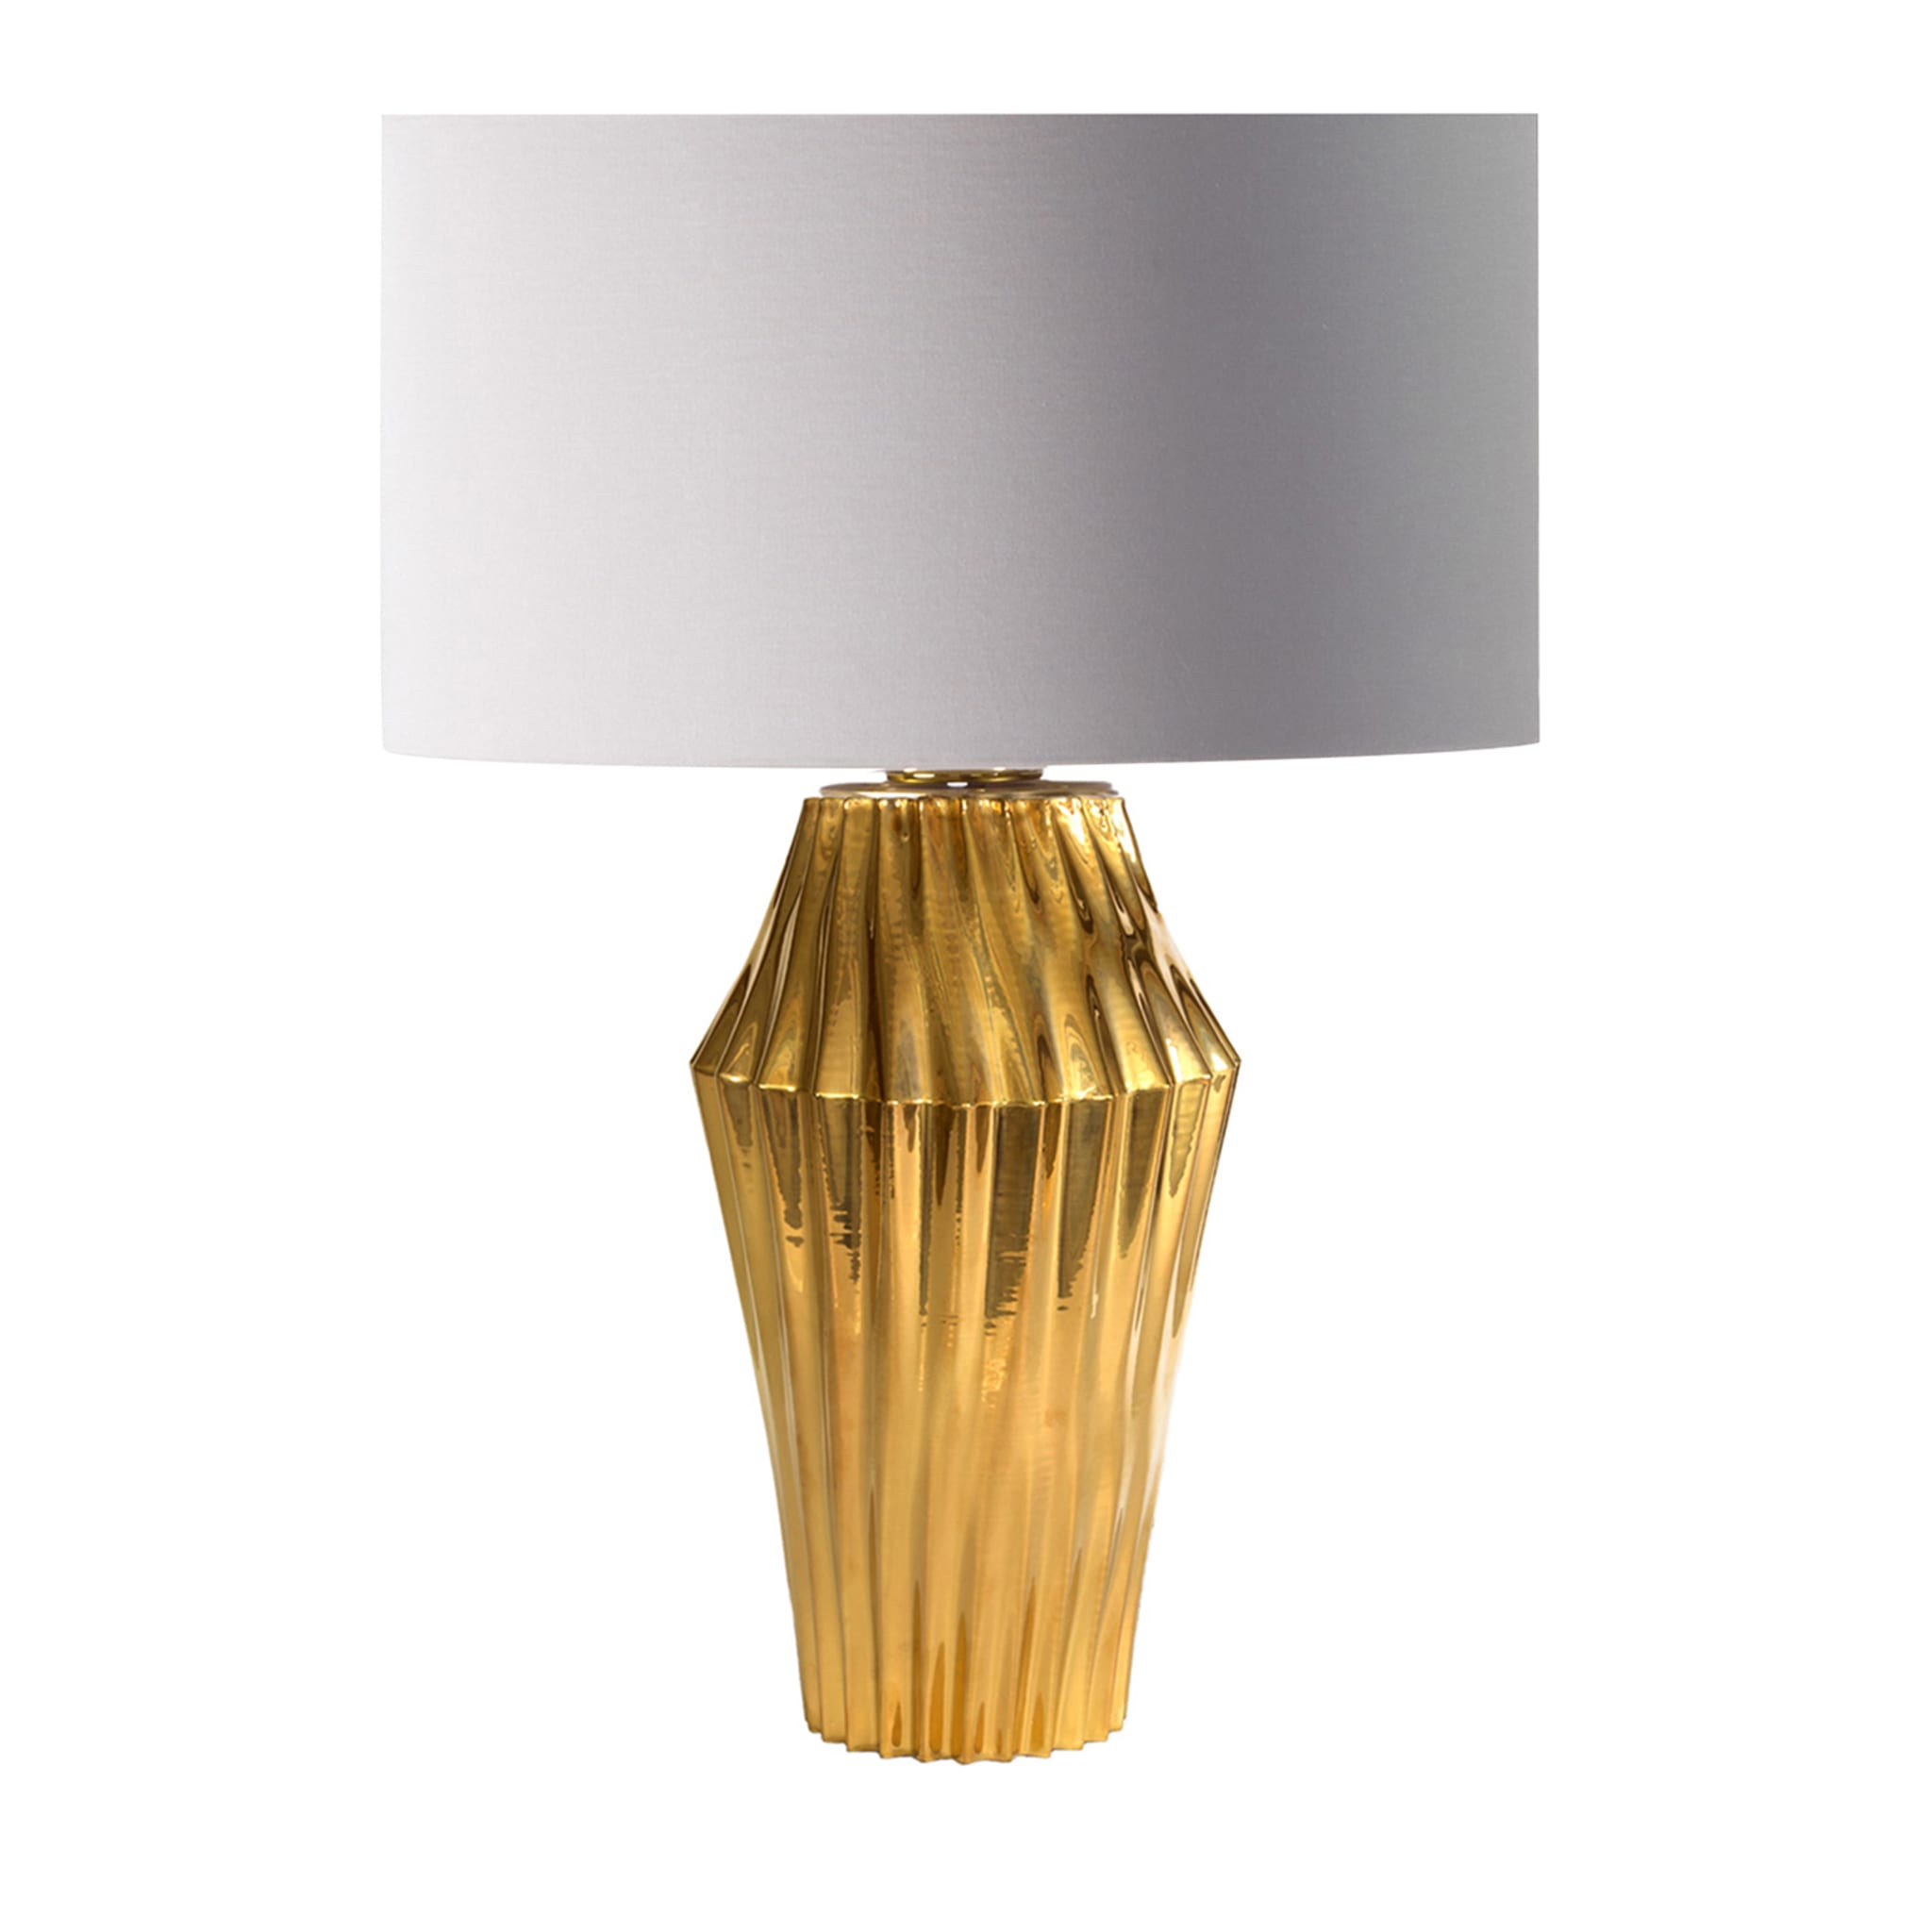 Vertigo Gold Table Lamp - Main view